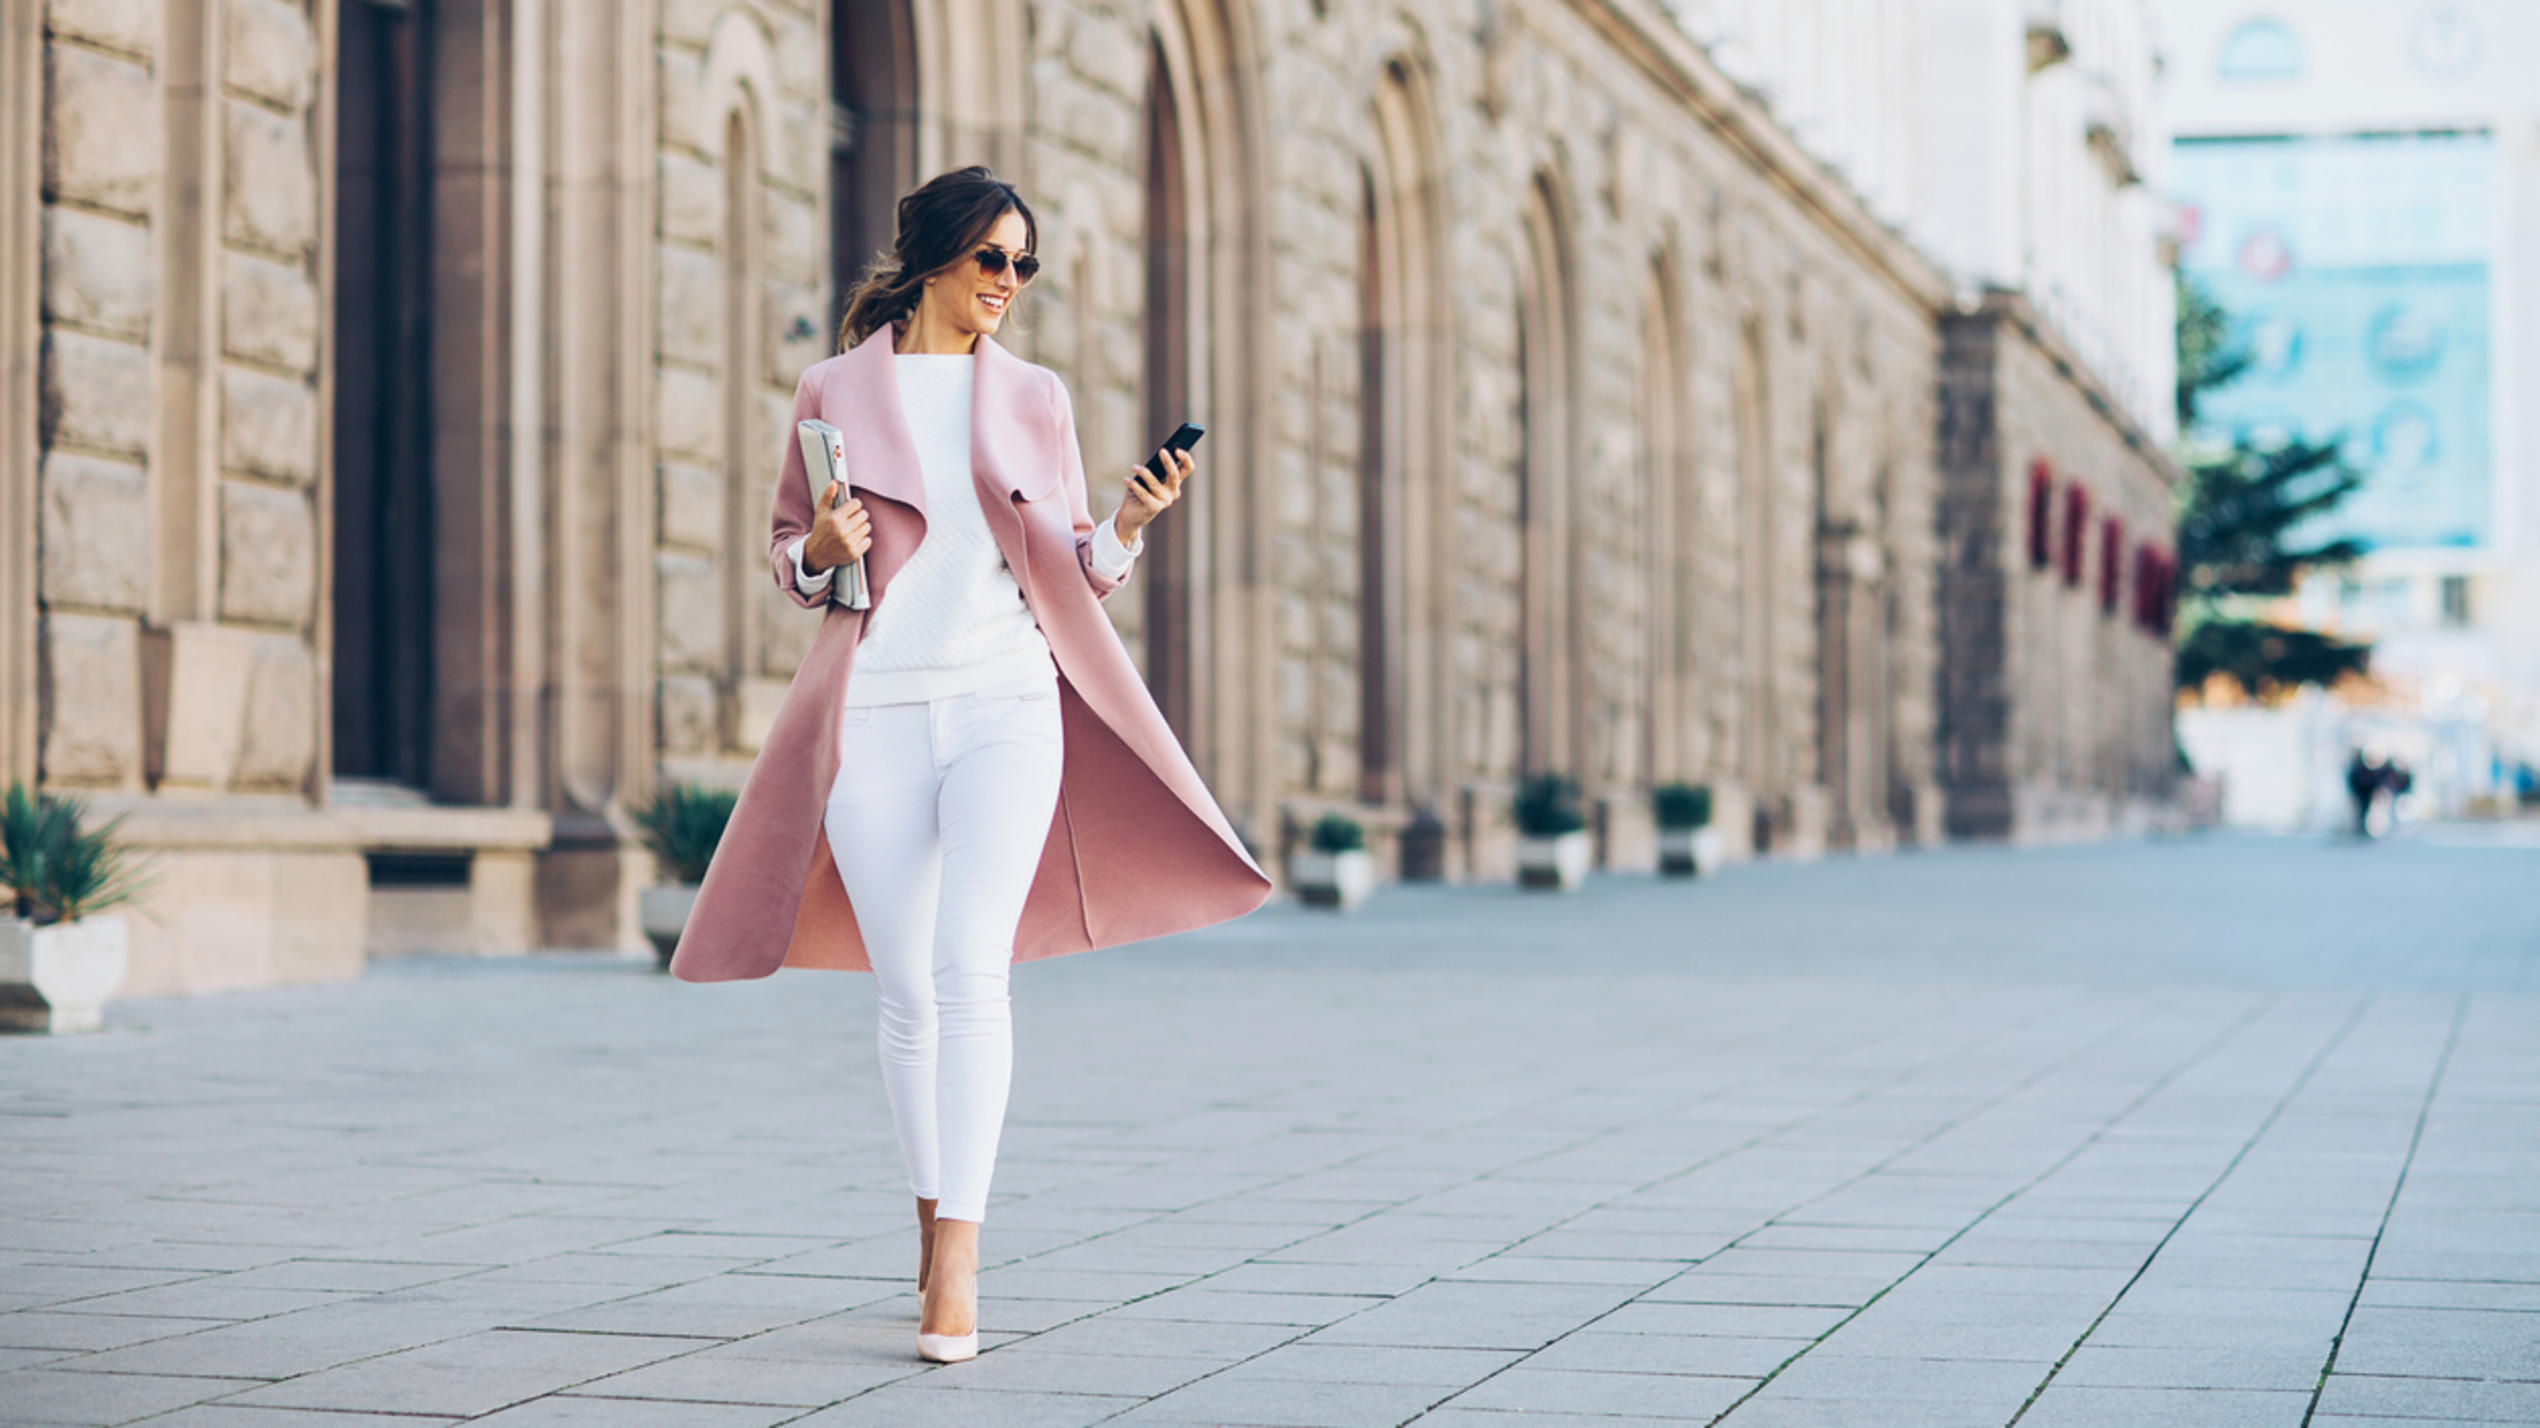 Eine elegante junge Frau ist trendy gekleidet und läuft eine Straße entlang.